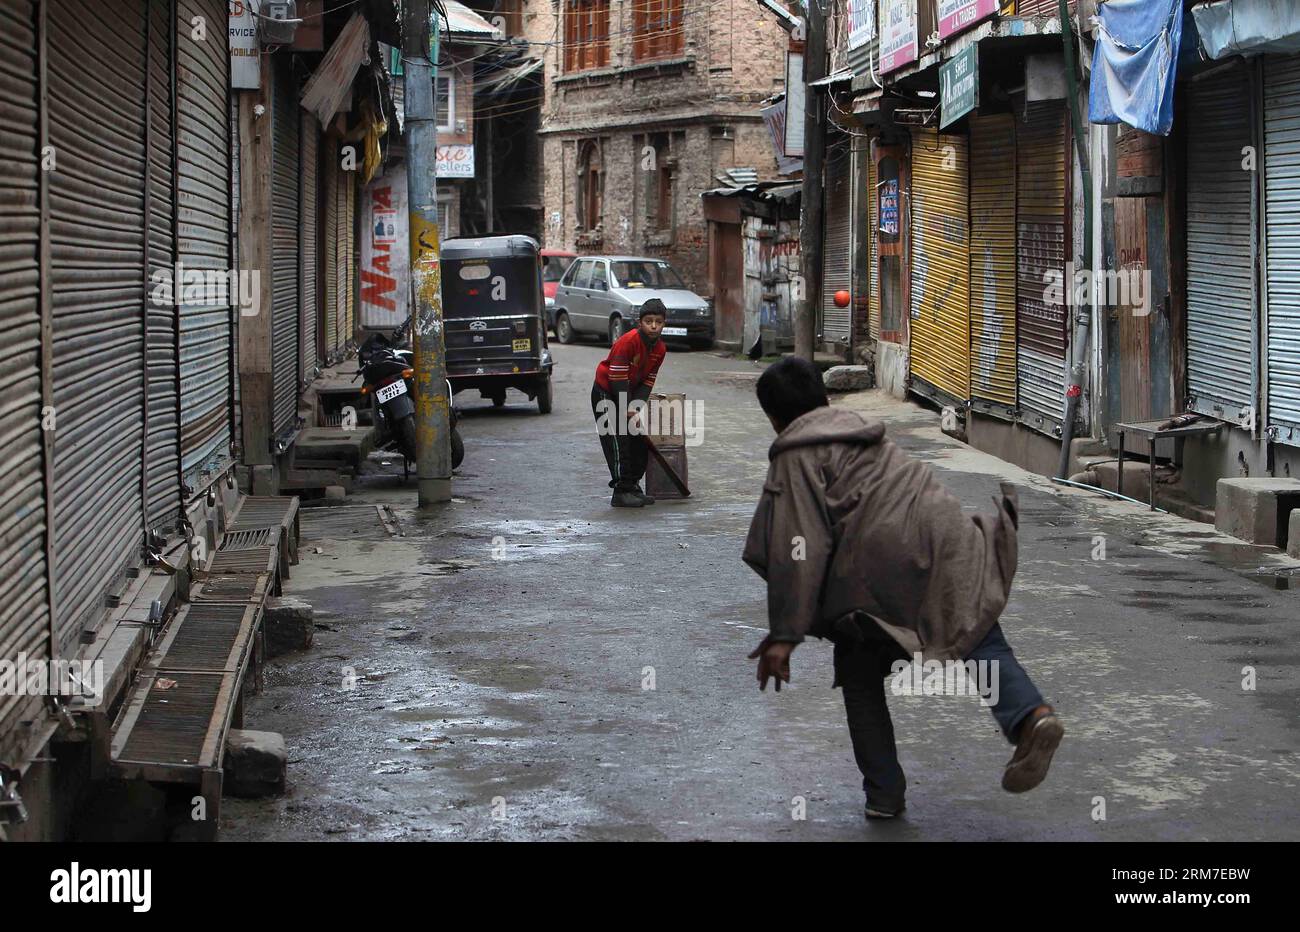 (140228) -- SRINAGAR, 28 febbraio 2014 (Xinhua) -- i bambini del Kashmir giocano a cricket in un mercato chiuso durante lo sciopero a Srinagar, capitale estiva del Kashmir controllato dagli indiani, il 28 febbraio 2014. Un arresto è stato osservato dalle aree a maggioranza musulmana del Kashmir controllato dagli indiani in seguito alla chiamata dei gruppi separatisti del Kashmir che cercavano l'identificazione di sette sospetti militanti uccisi dall'esercito indiano lunedì nel distretto di Kupwara, a circa 125 km a nord-ovest della città di Srinagar. Le proteste scoppiarono nella zona dopo che i civili sostenevano che gli uomini uccisi fossero civili. La polizia non ha identificato la vittima Foto Stock